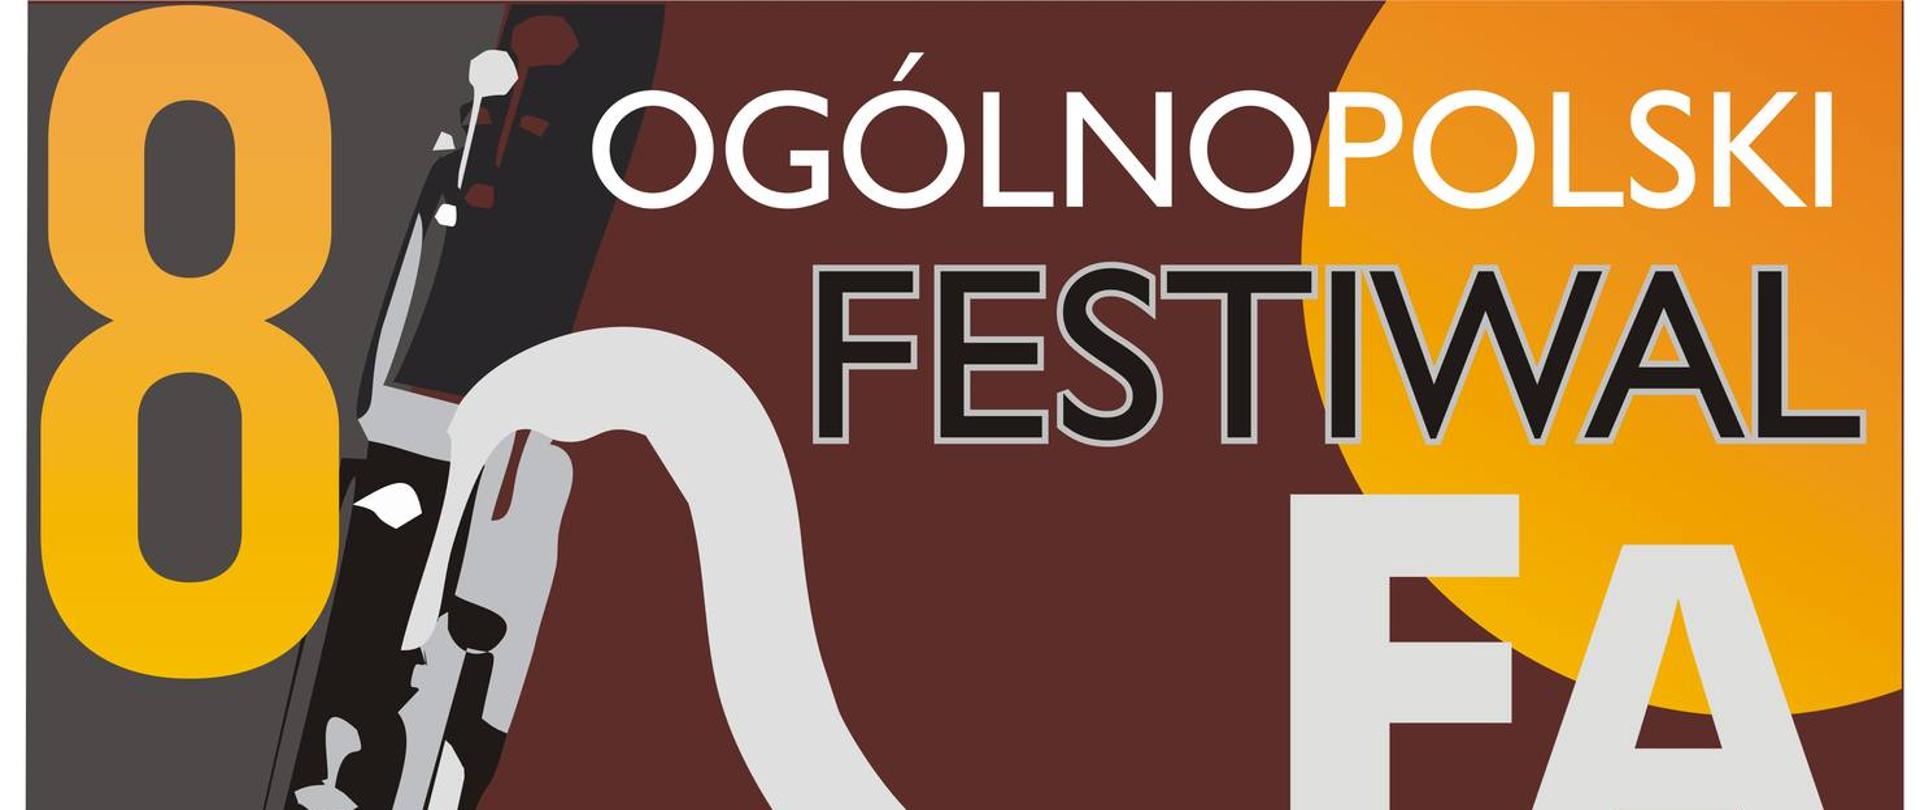 VIII Ogólnopolski Festiwal Fagotowy, który odbędzie się od 12 do 14 stycznia 2023 roku w Państwowej Szkole Muzycznej I i II stopnia w Wadowicach. Podczas festiwalu odbędą się przesłuchania, koncerty i warsztaty fagotowe.